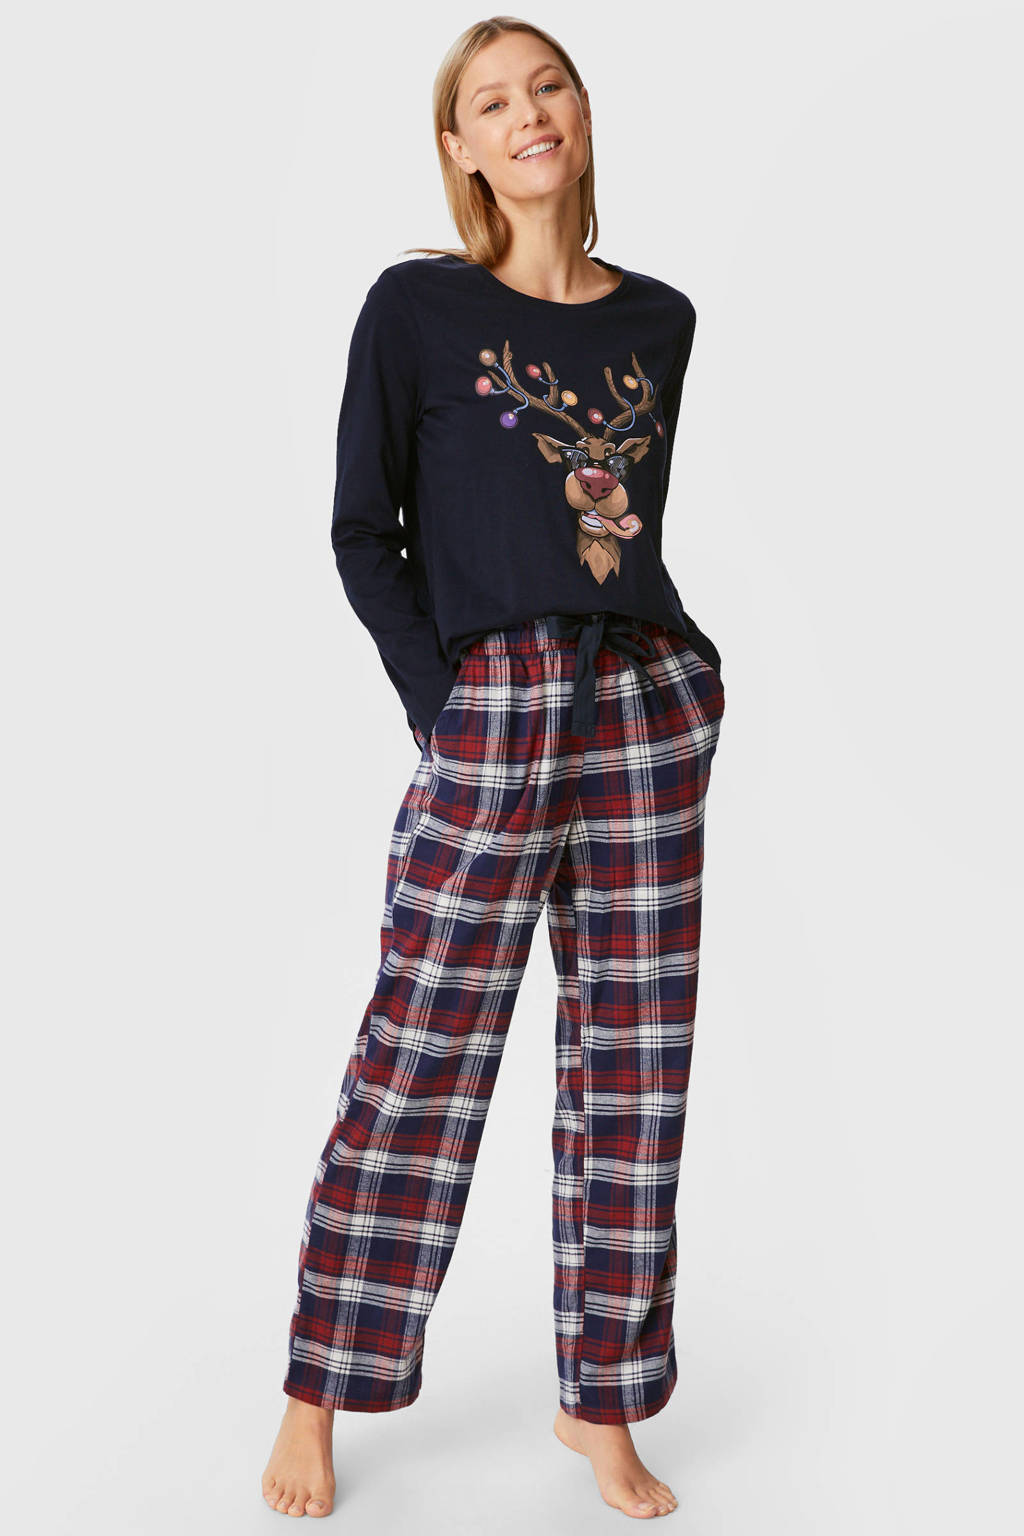 Discriminatie bank kogel C&A pyjama met kerst print donkerblauw/rood | wehkamp